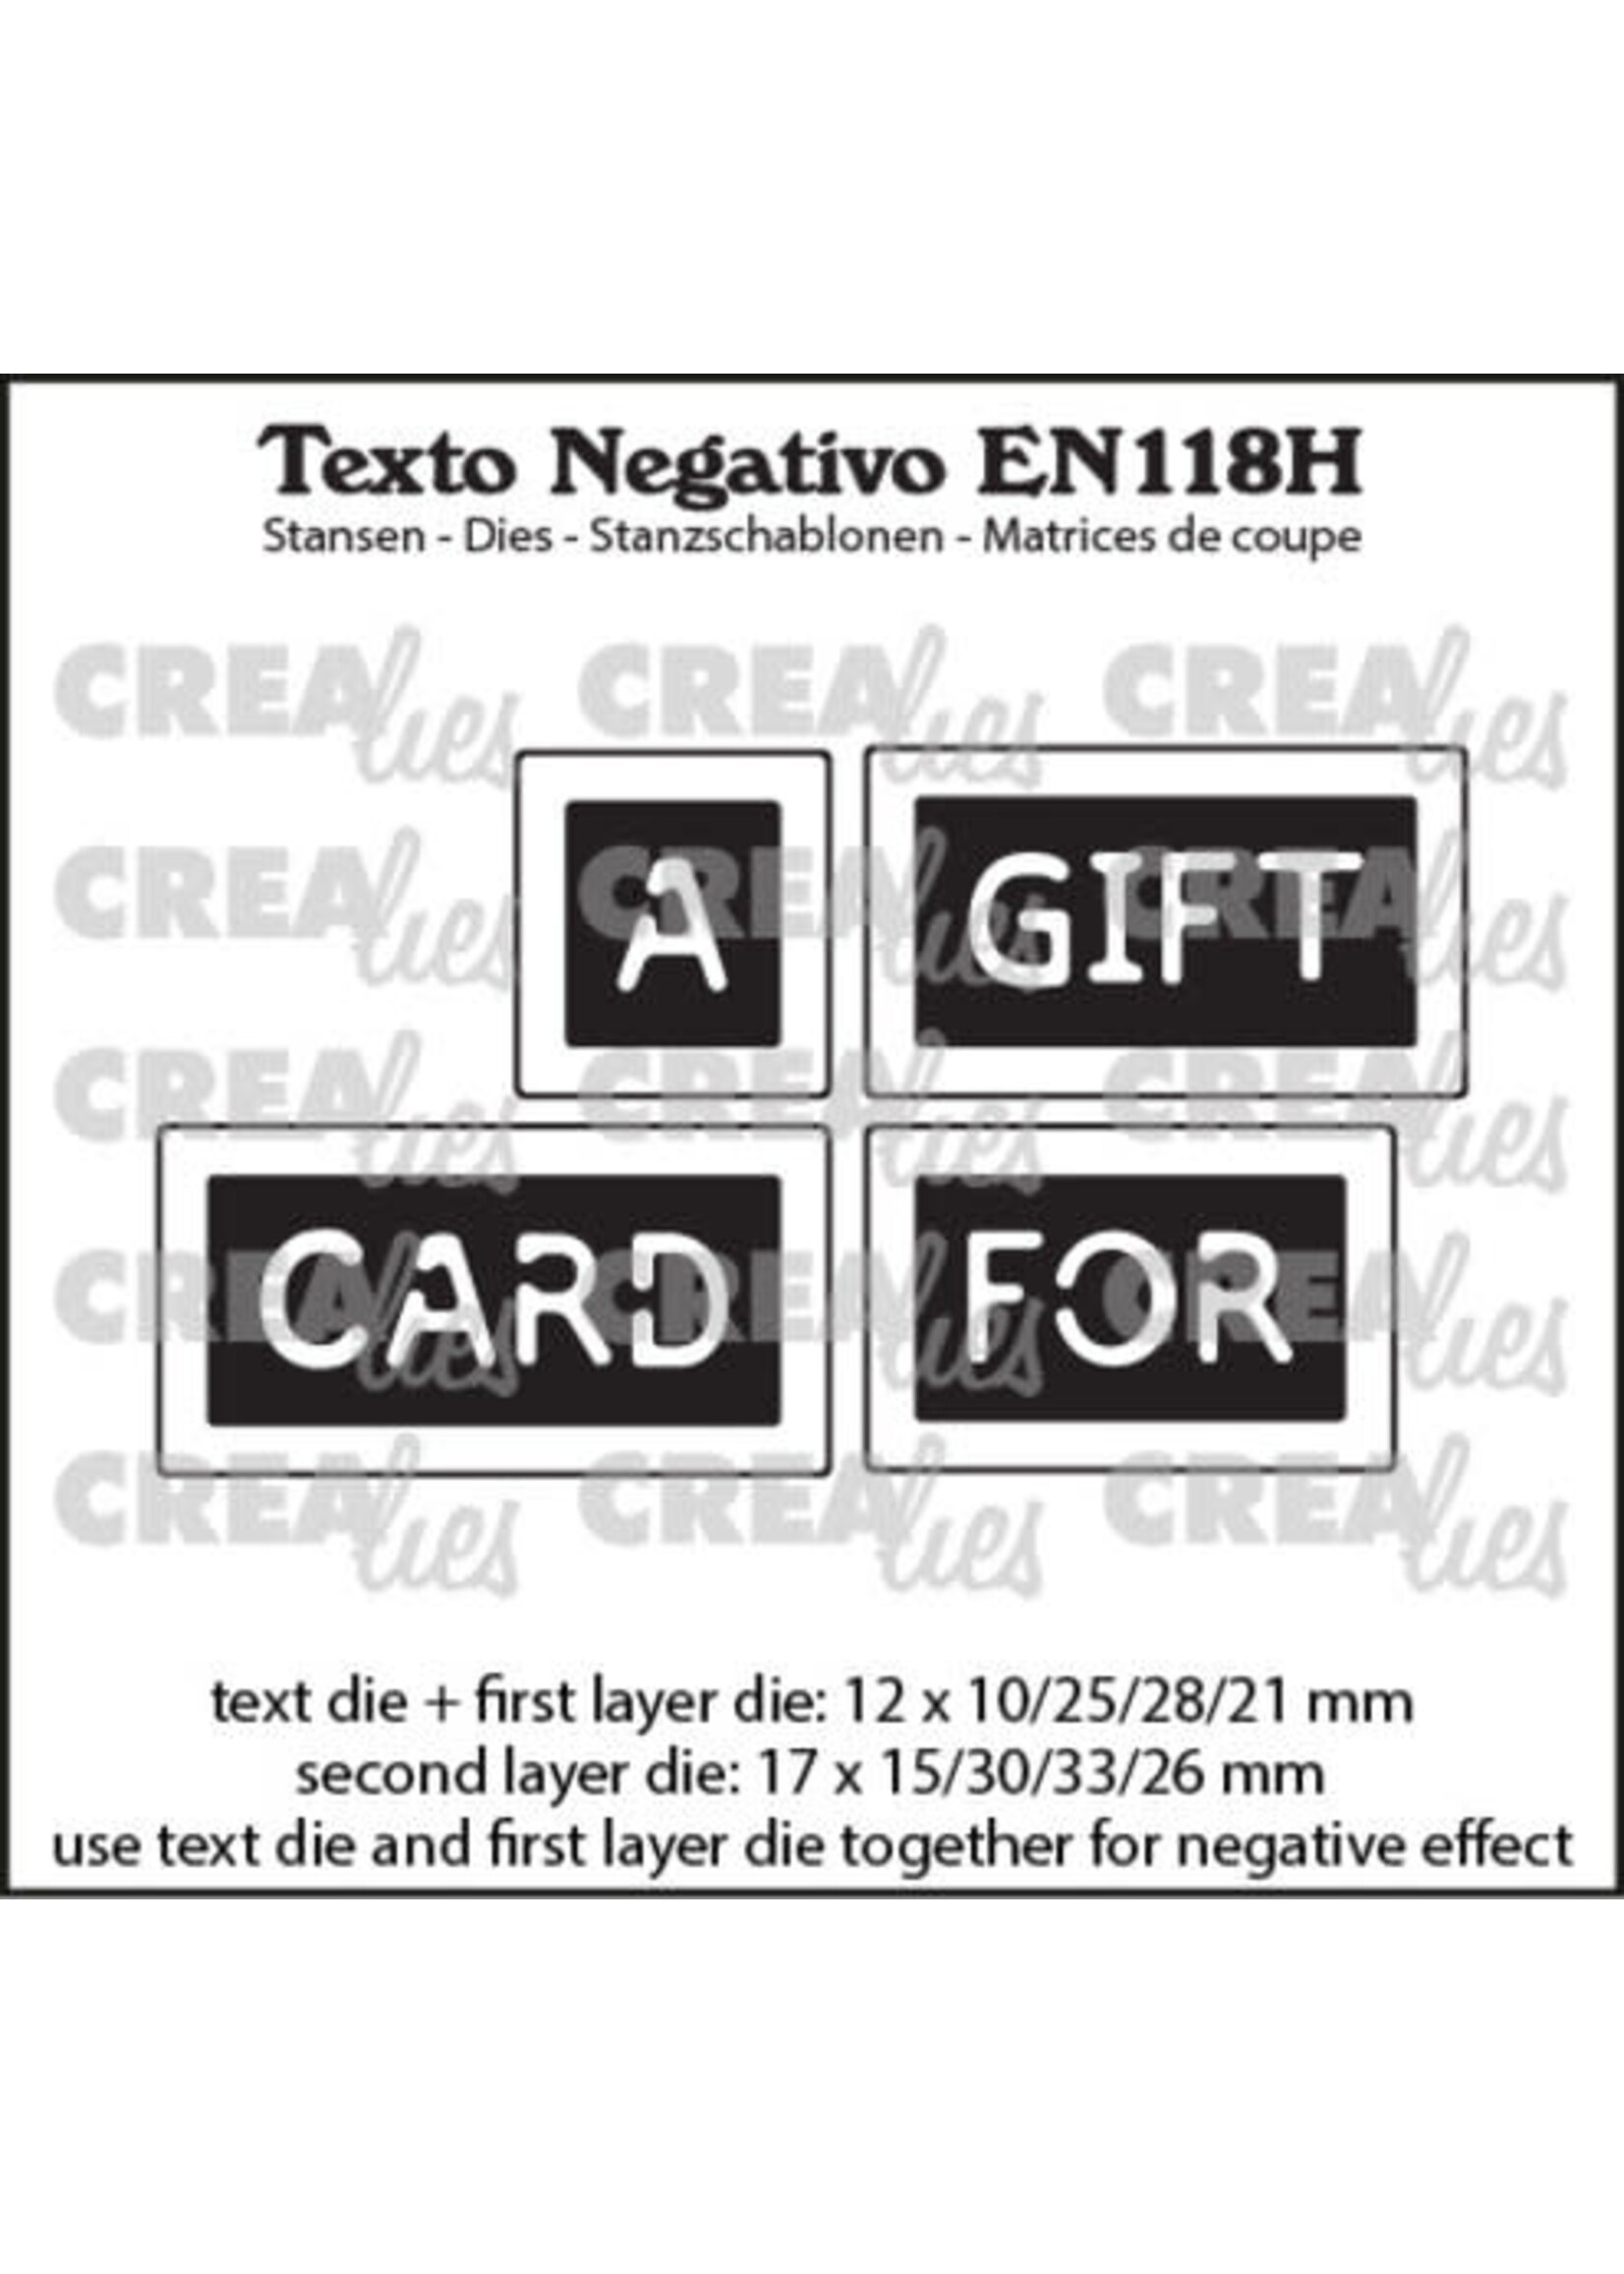 Texto Negativo Stansen English No. 118H A Gift Card For (EN118H)